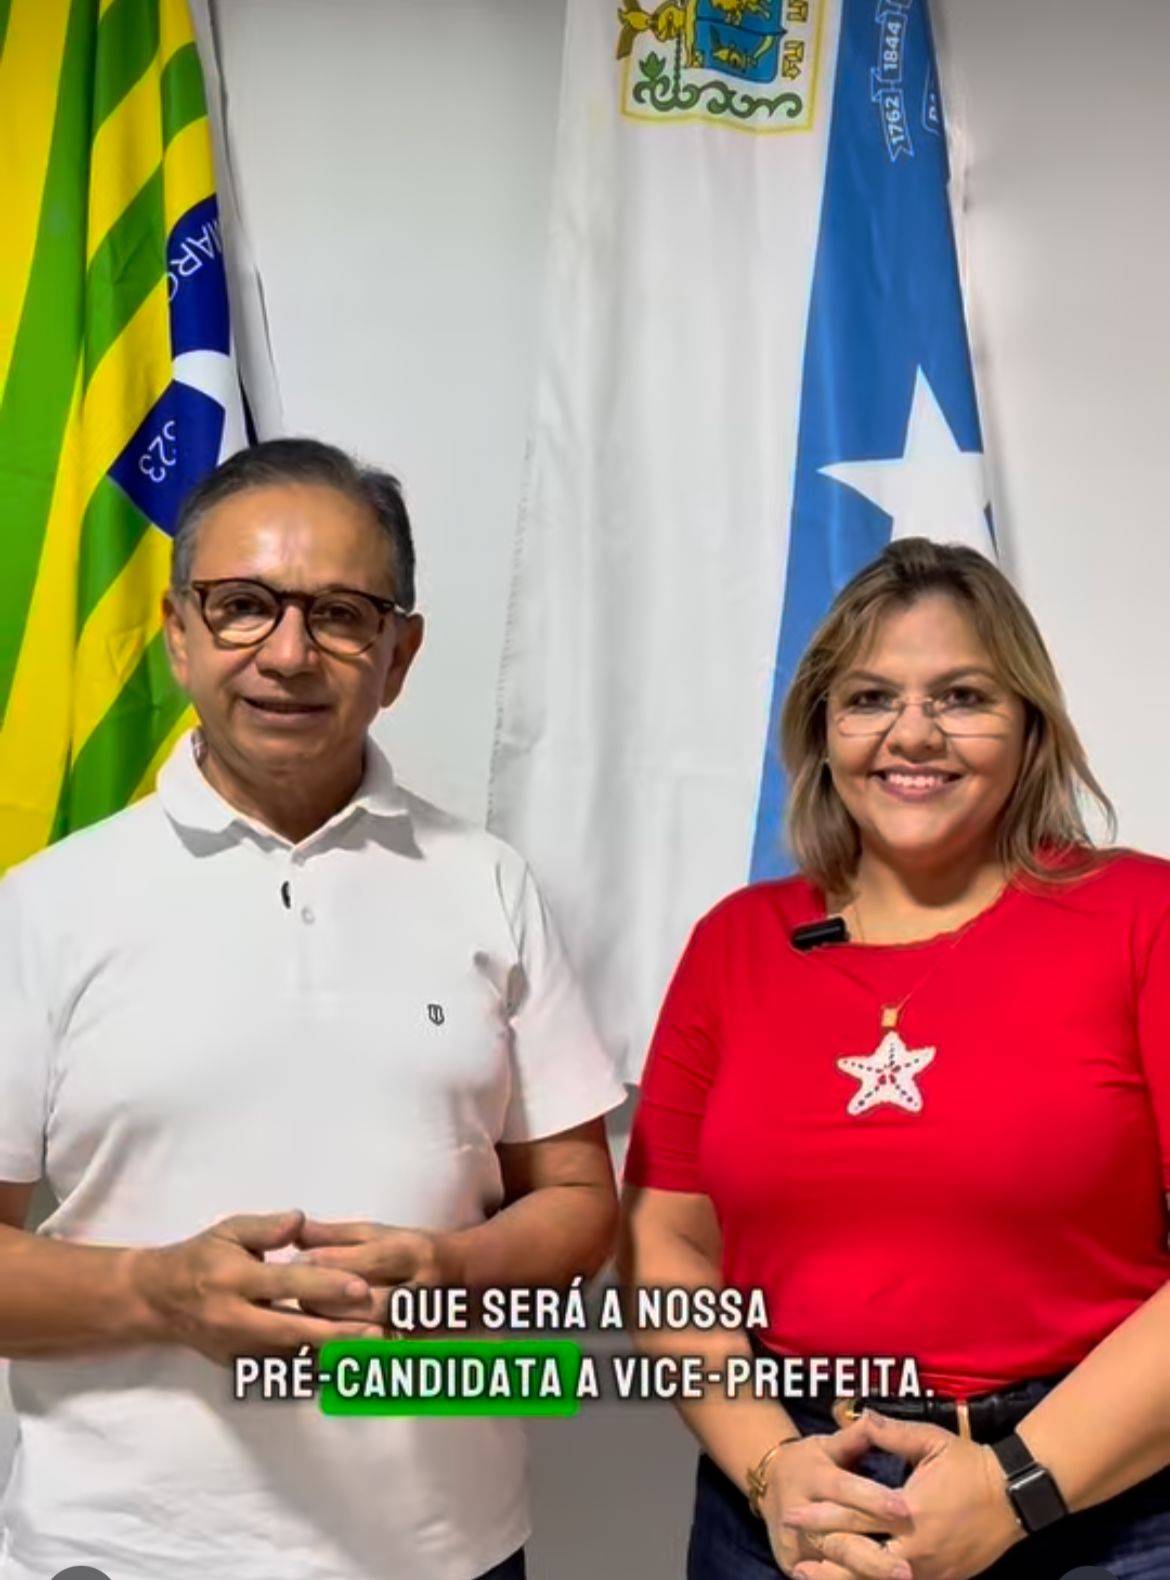 Dr. Hélio confirma Flaviana Veras como sua pré-candidata a vice em Parnaíba